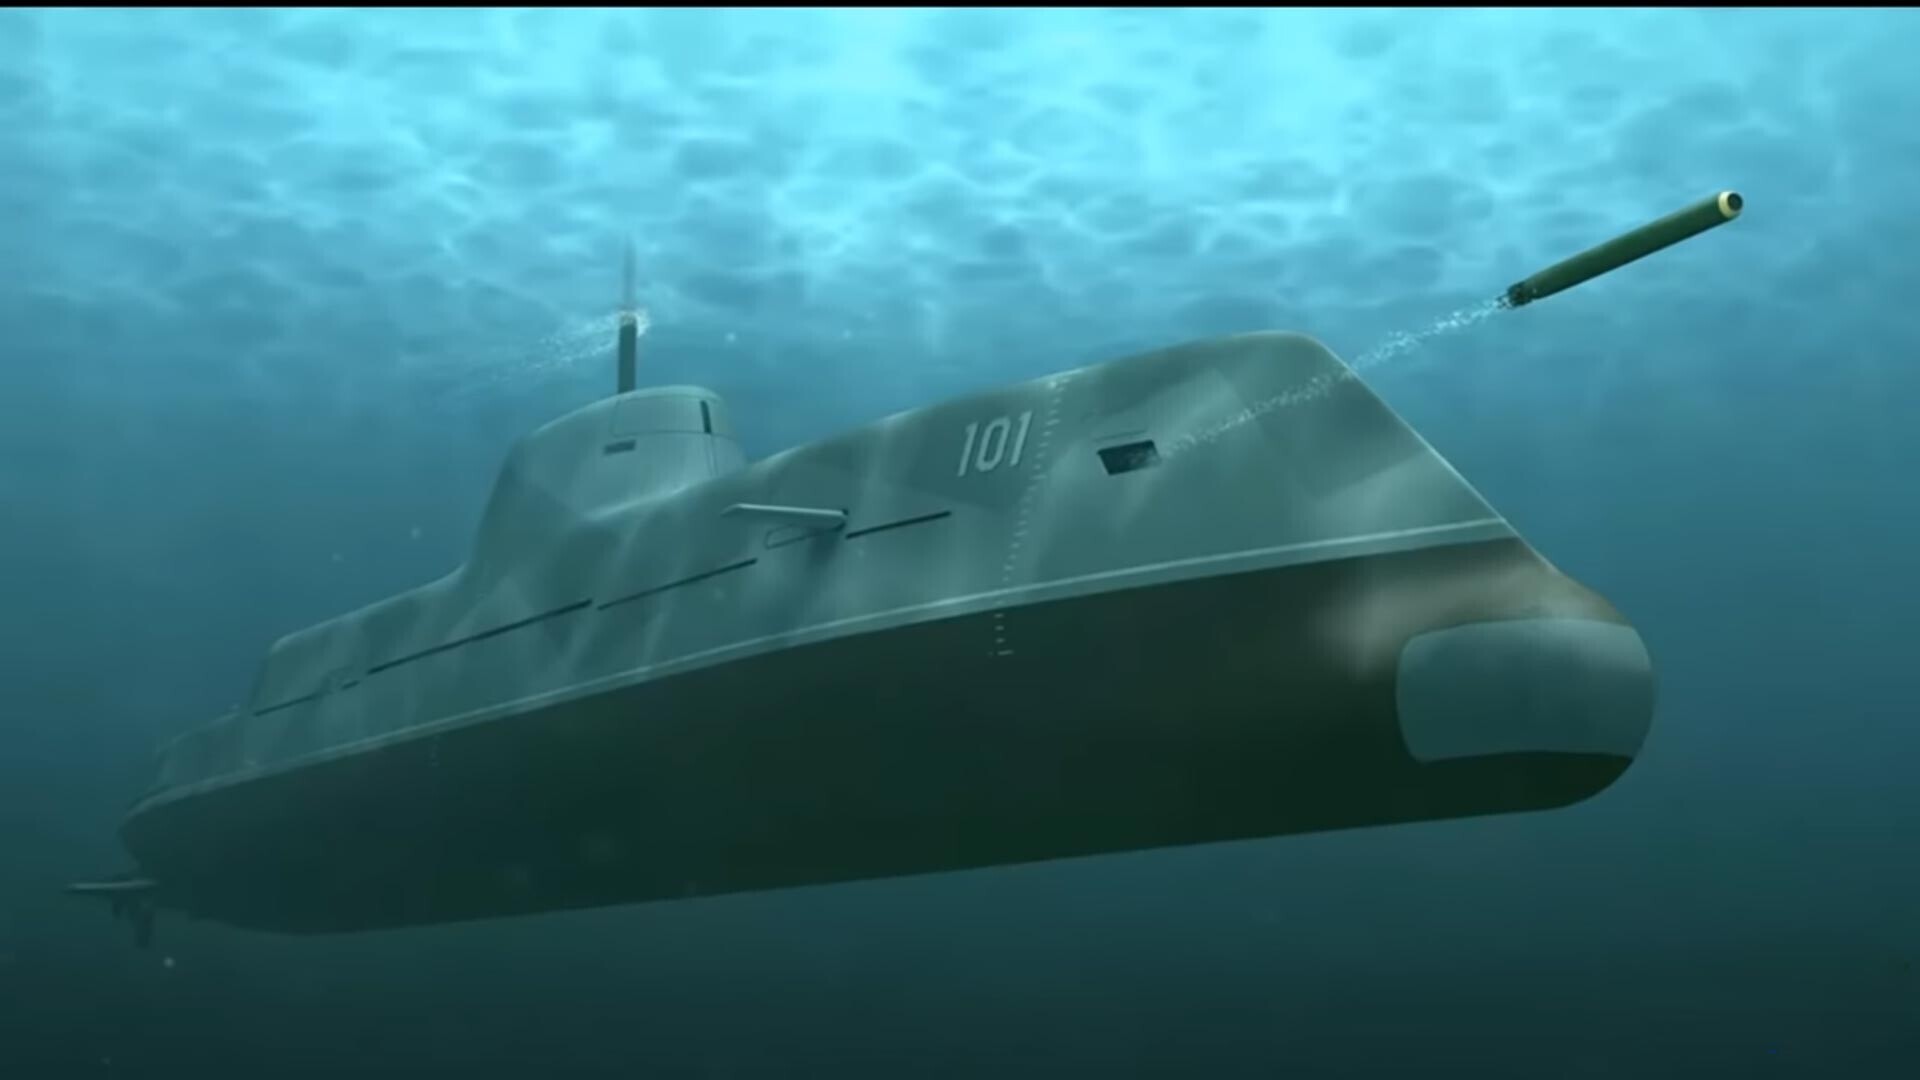 Втора модификација на подводниот патролен брод „Страж“ со ракетно-торпедно оружје.

